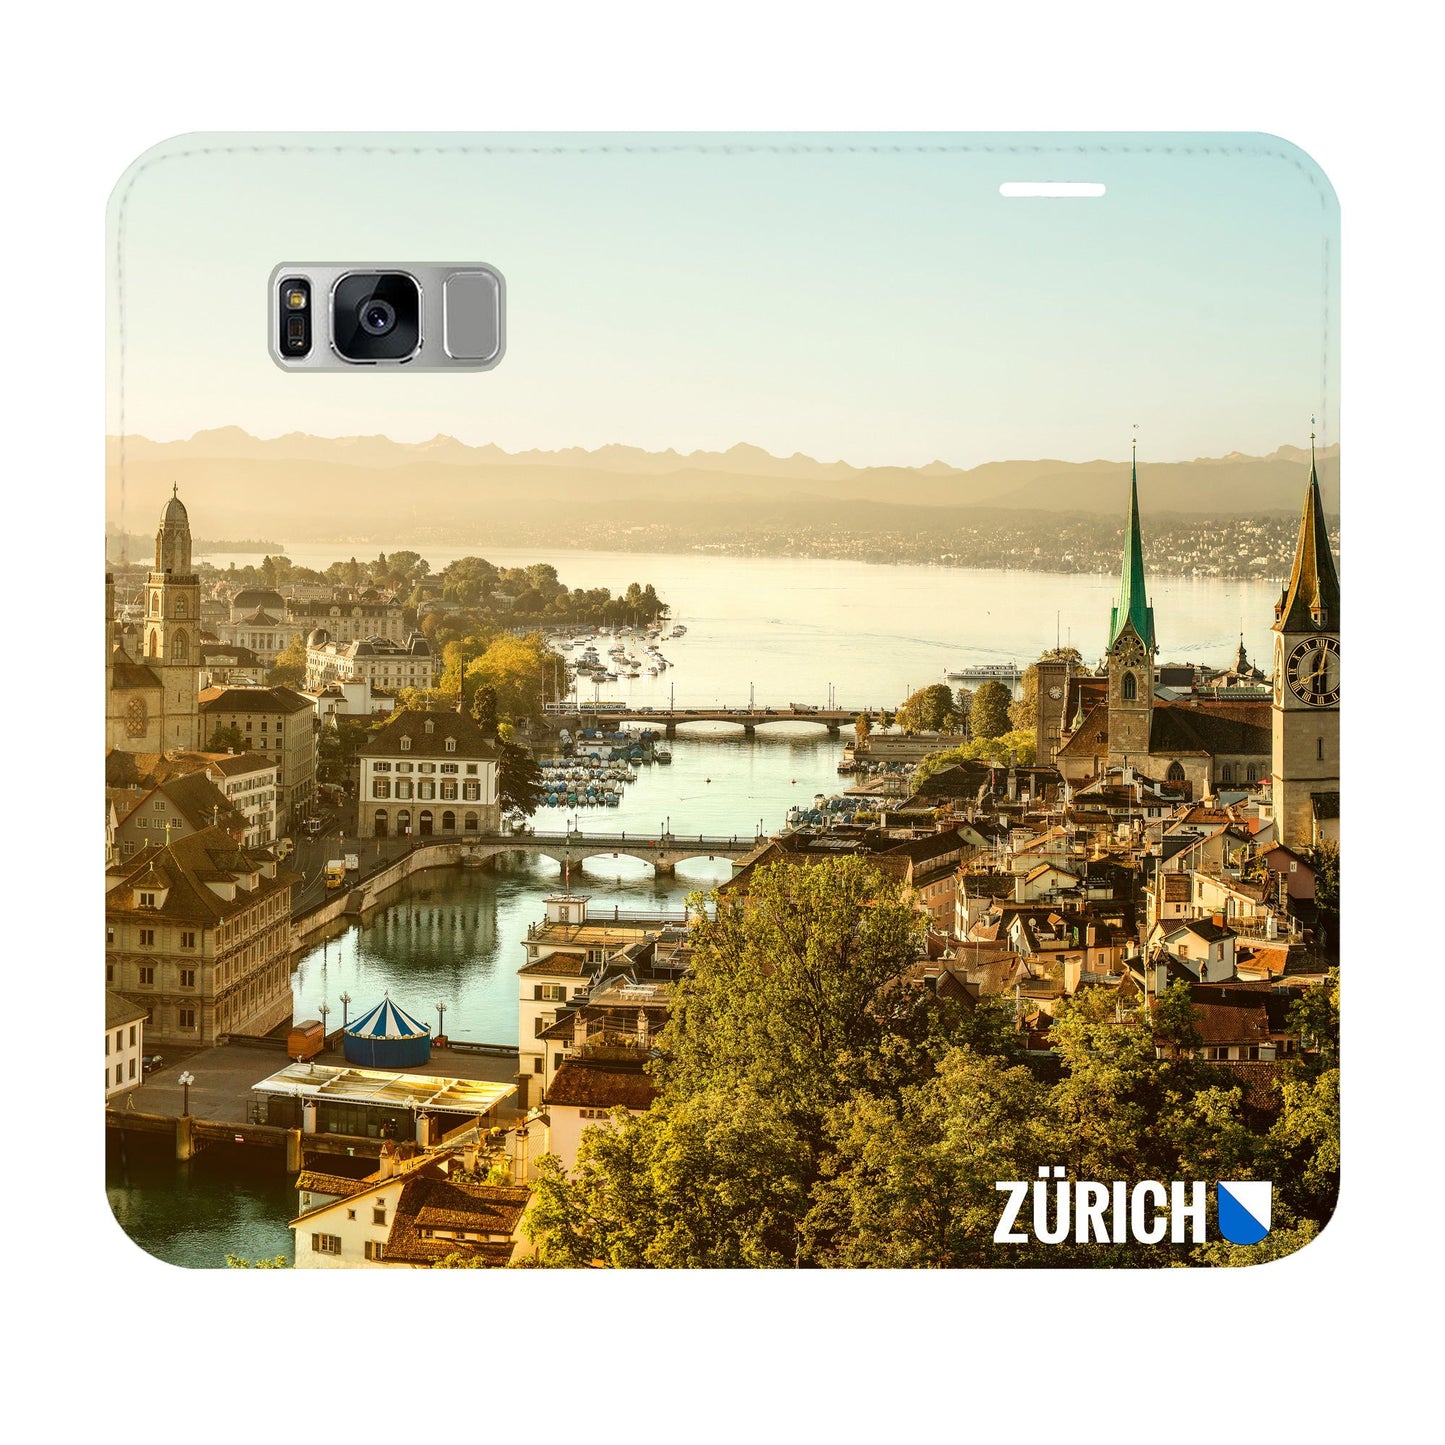 Zürich City von Oben Panorama Case für Samsung Galaxy S8 Plus